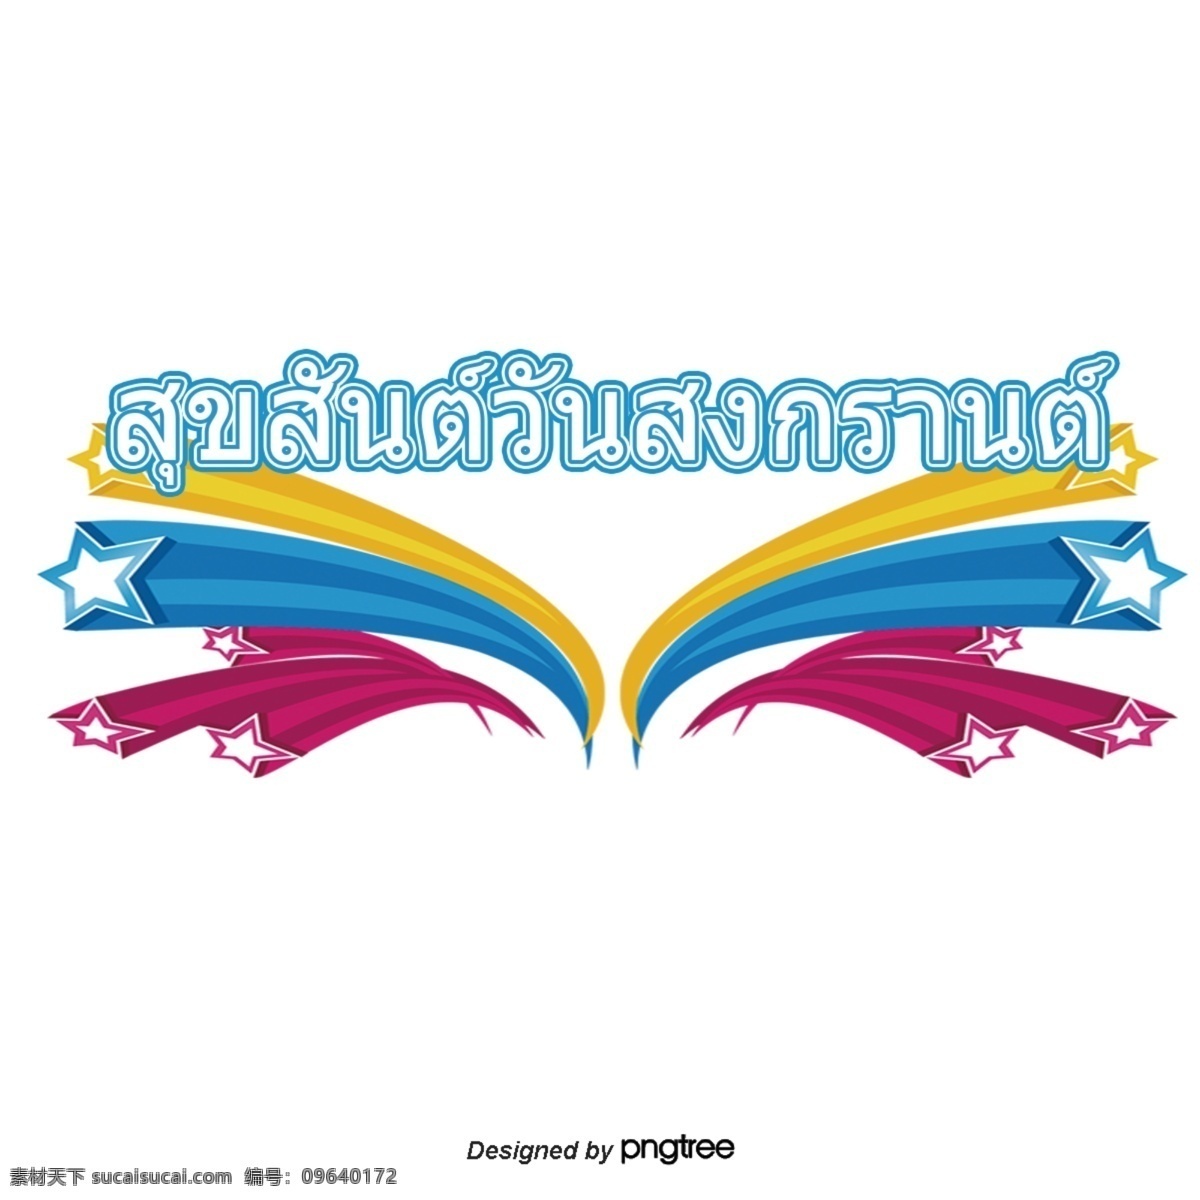 泰国 泼水节 字体 蓝色 粉红色 黄色 星星 图案 祝福 星形图案 黄色蓝色粉色